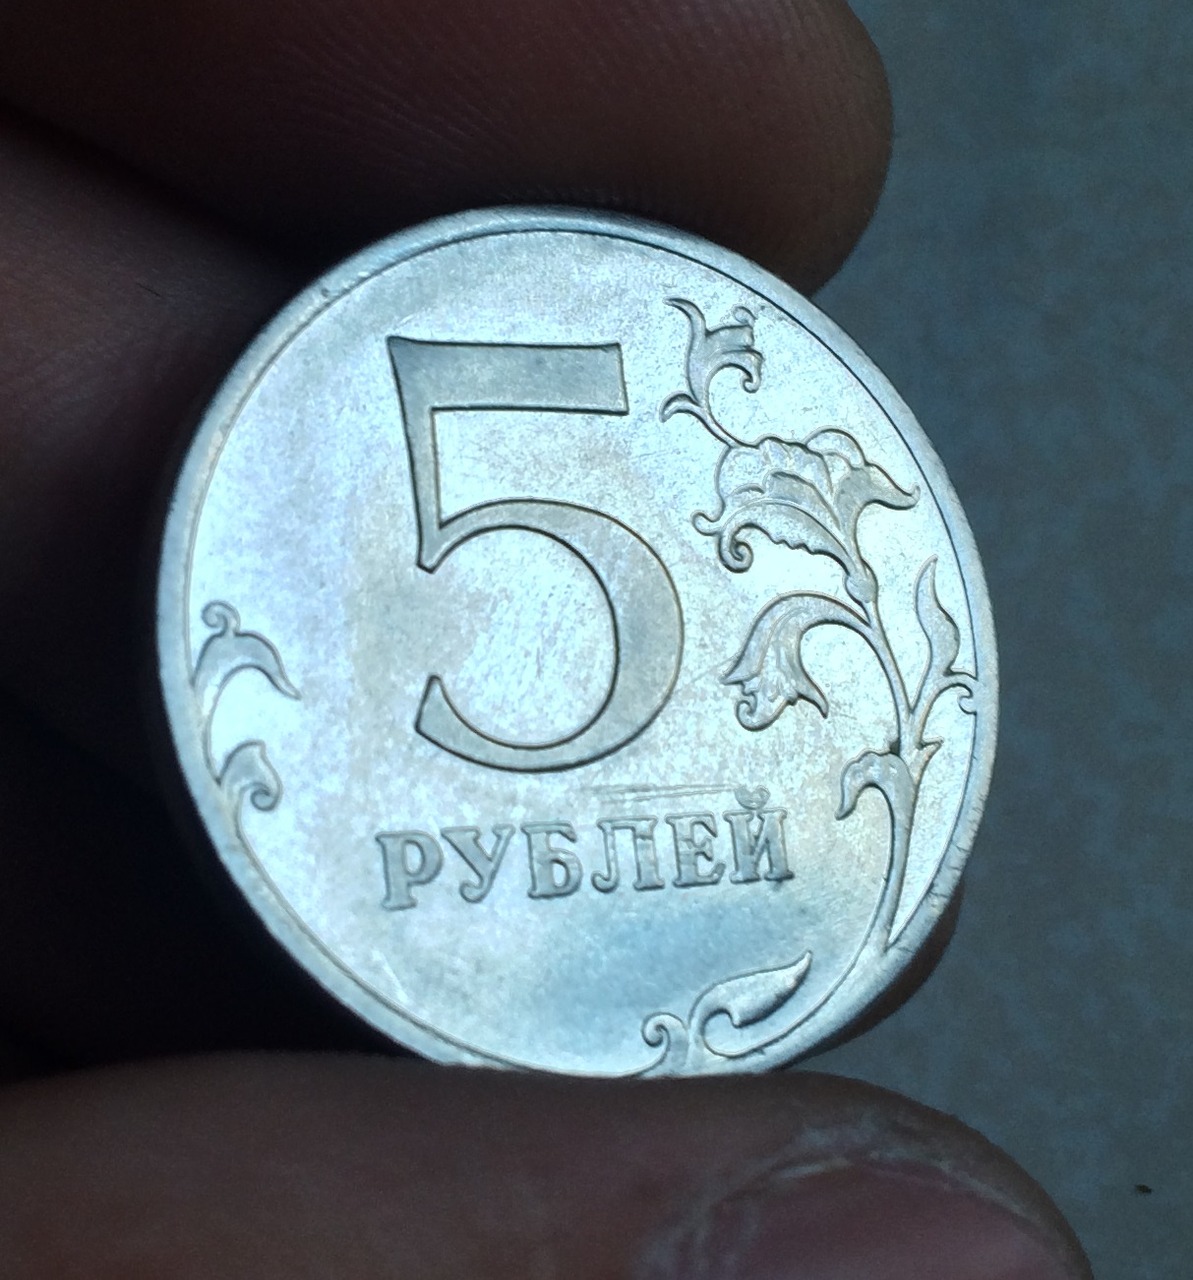 45 5 в рублях